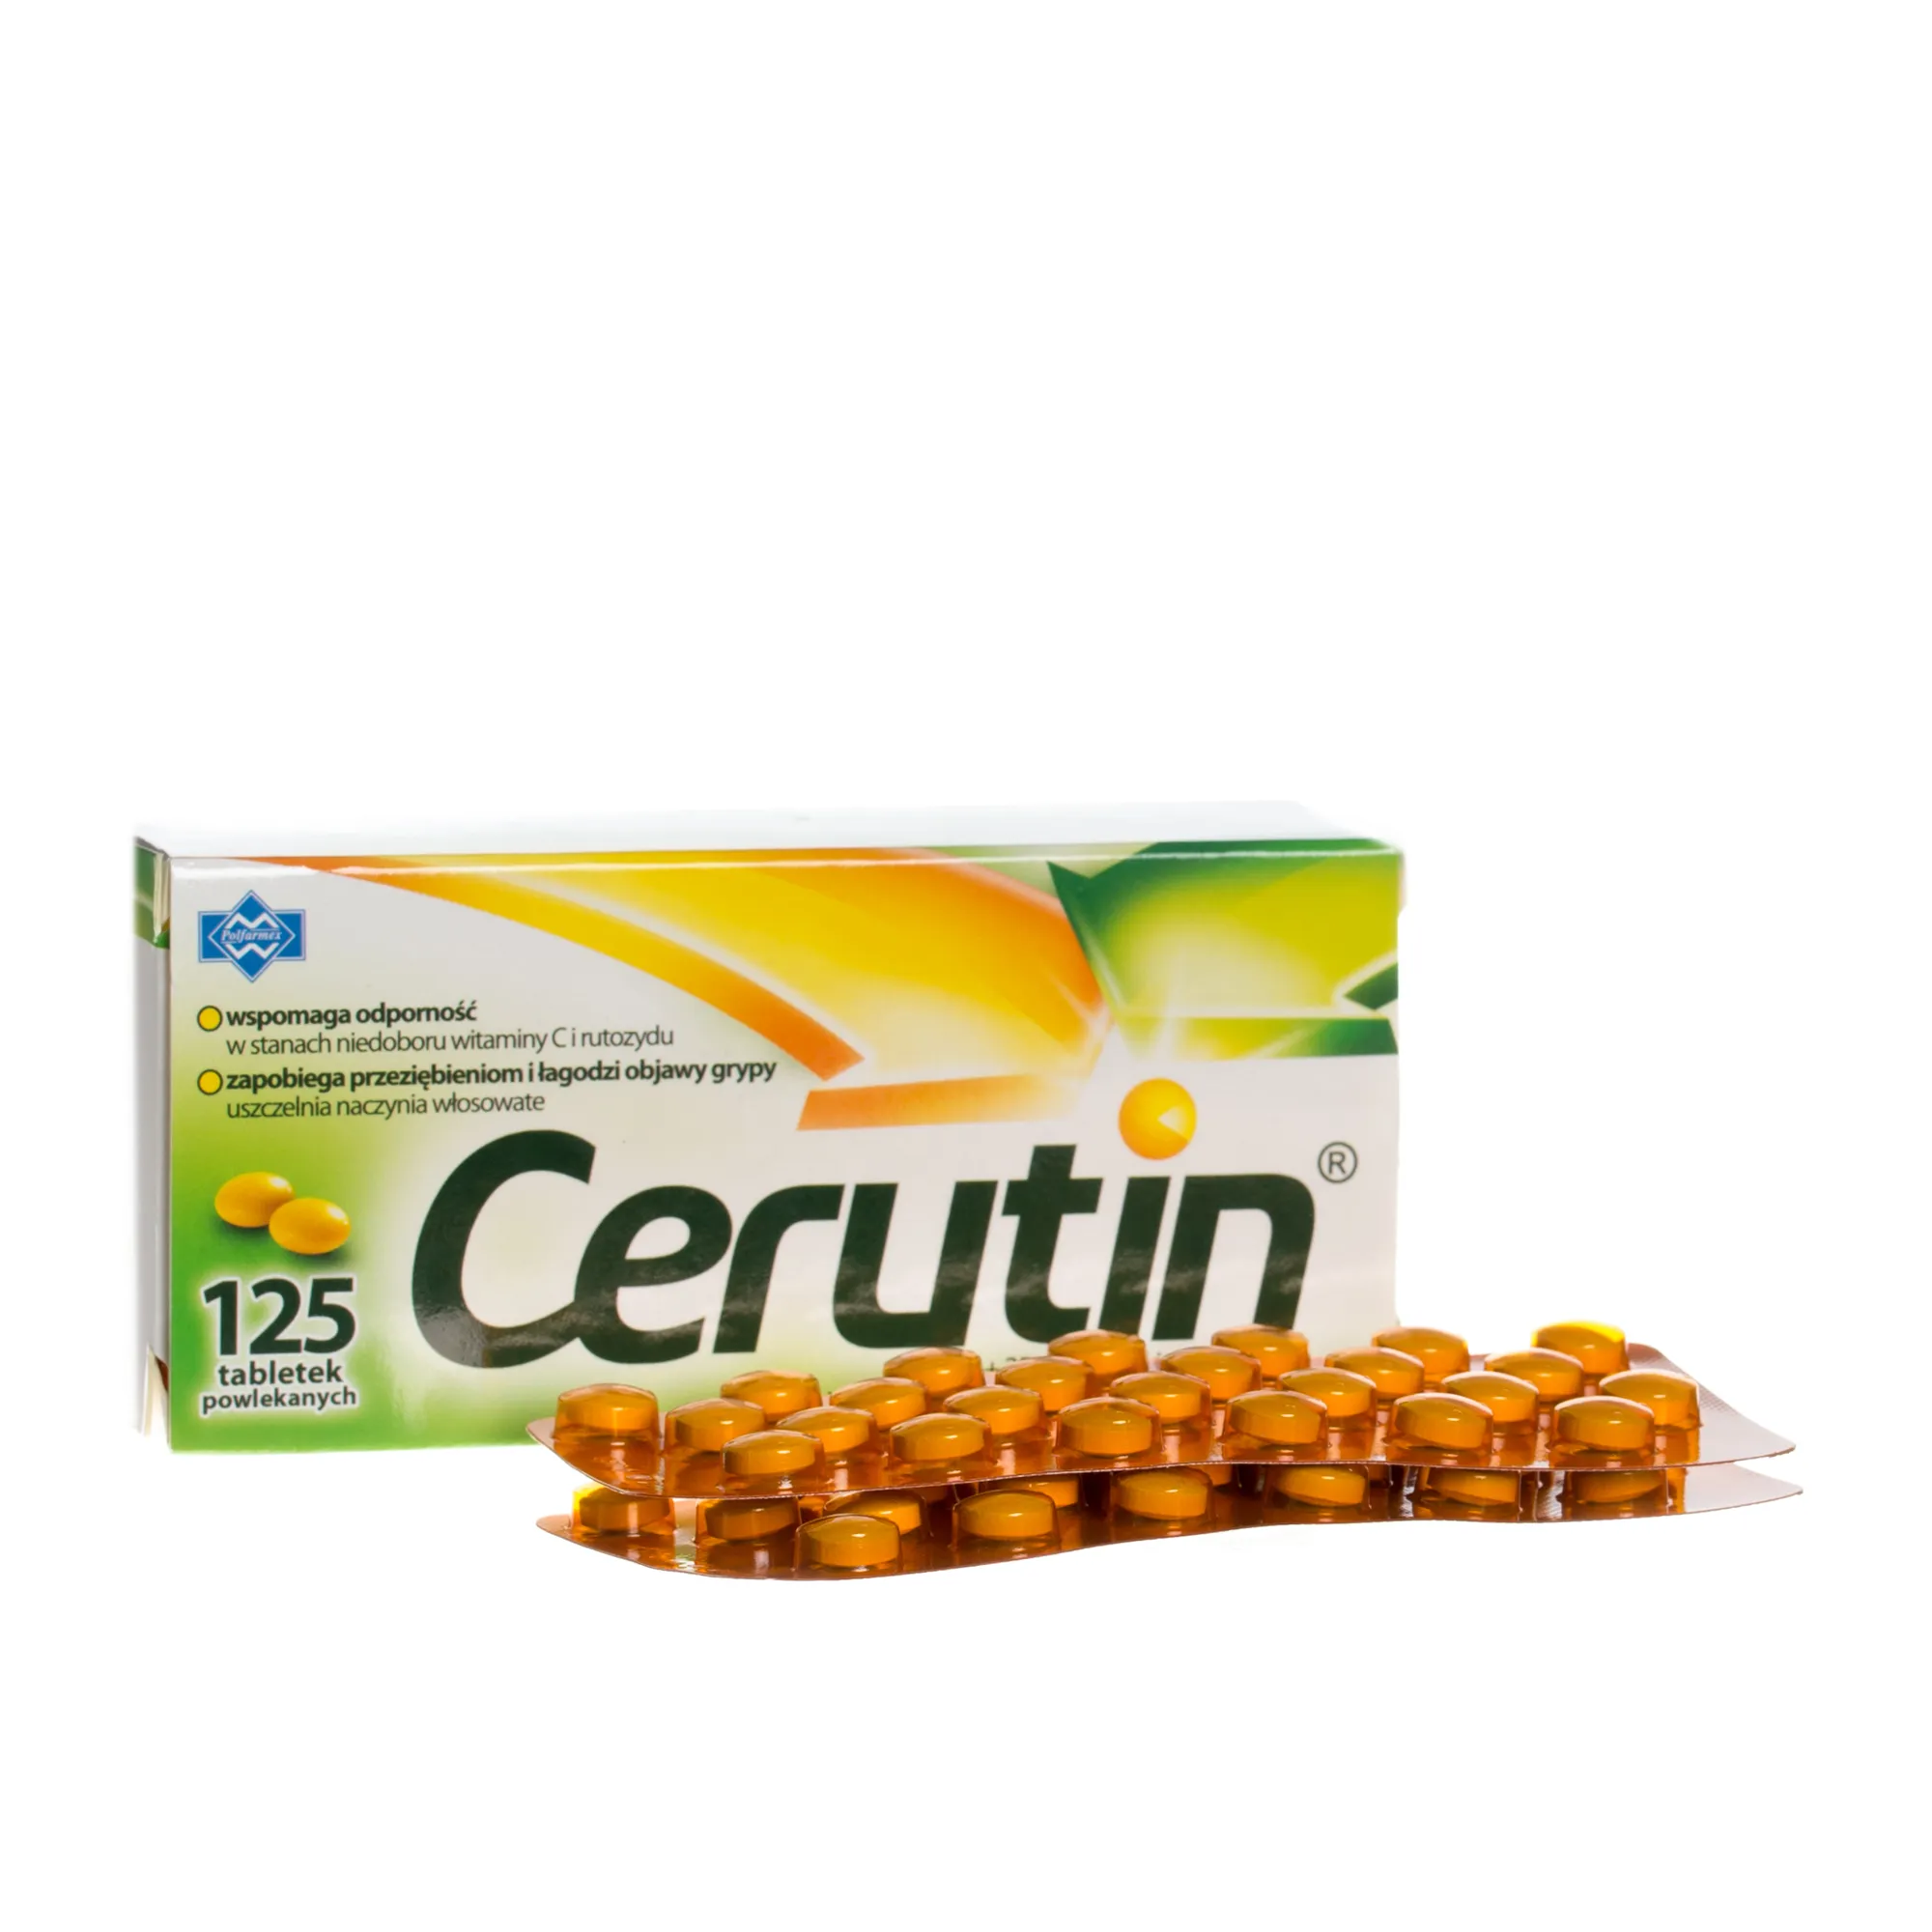 Cerutin, Lek wspomagający odporność, 125 tabletek